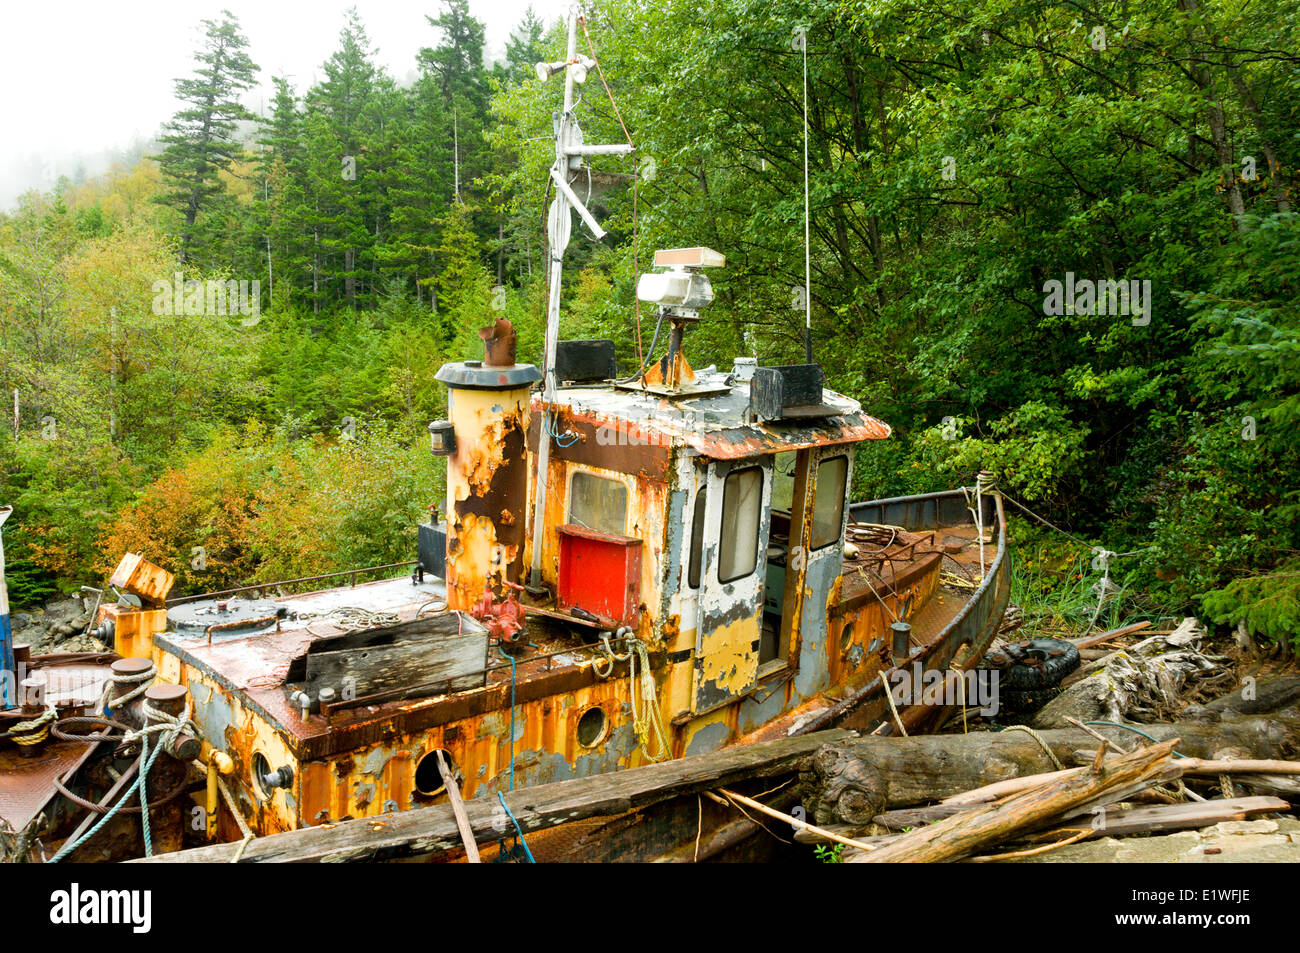 Un bateau de pêche à la retraite depuis longtemps moss recueille sur les rivages de l'Bentinck Arm, Bella Coola (Colombie-Britannique) Banque D'Images